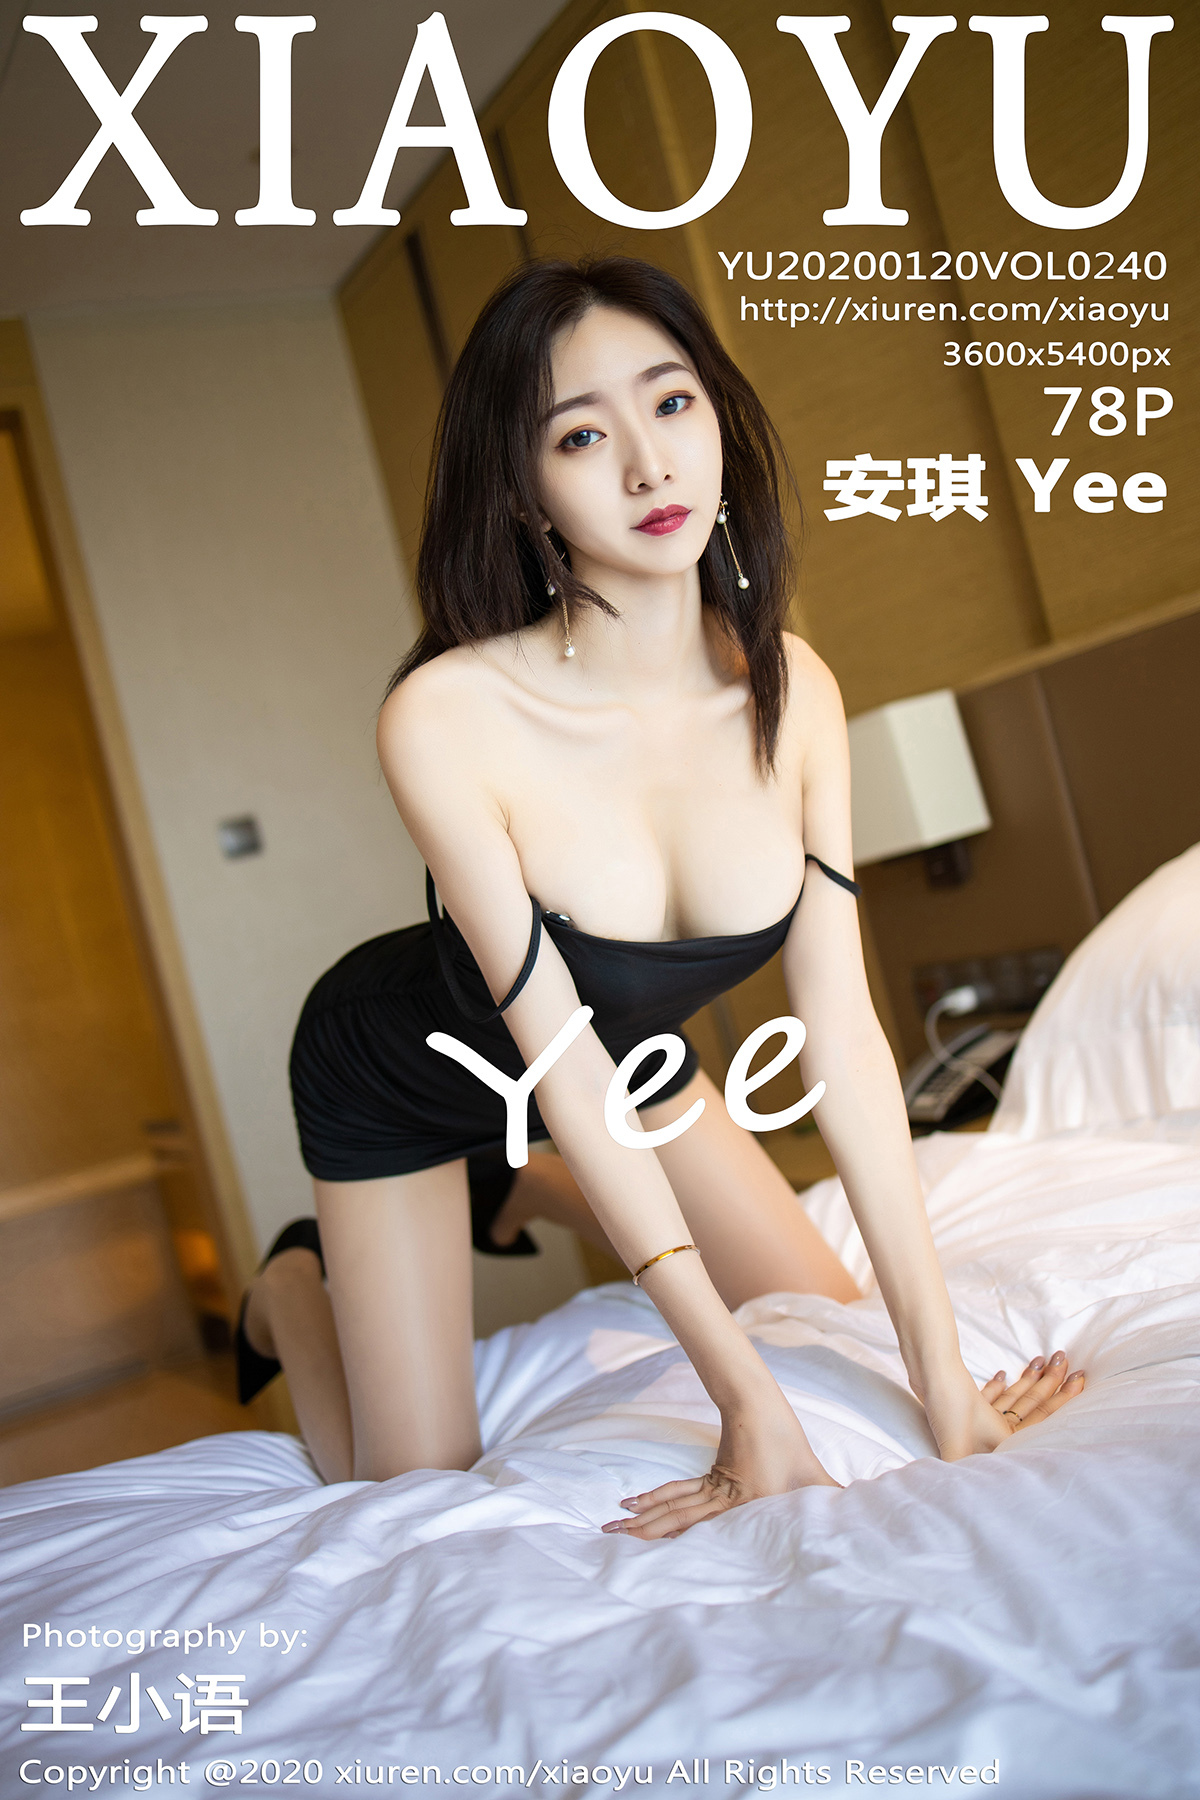 XIAOYU 语画界 2020.01.20 Vol.240 安琪 Yee